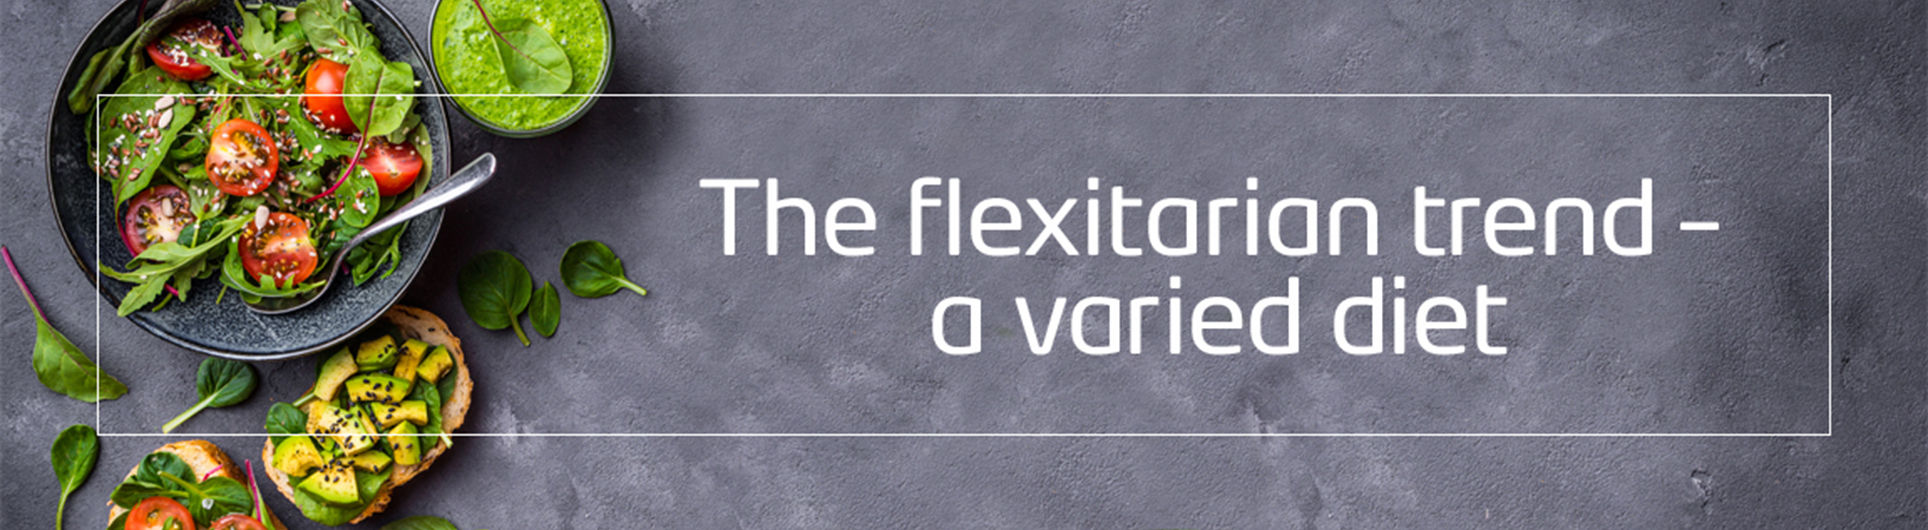 The flexitarian diet